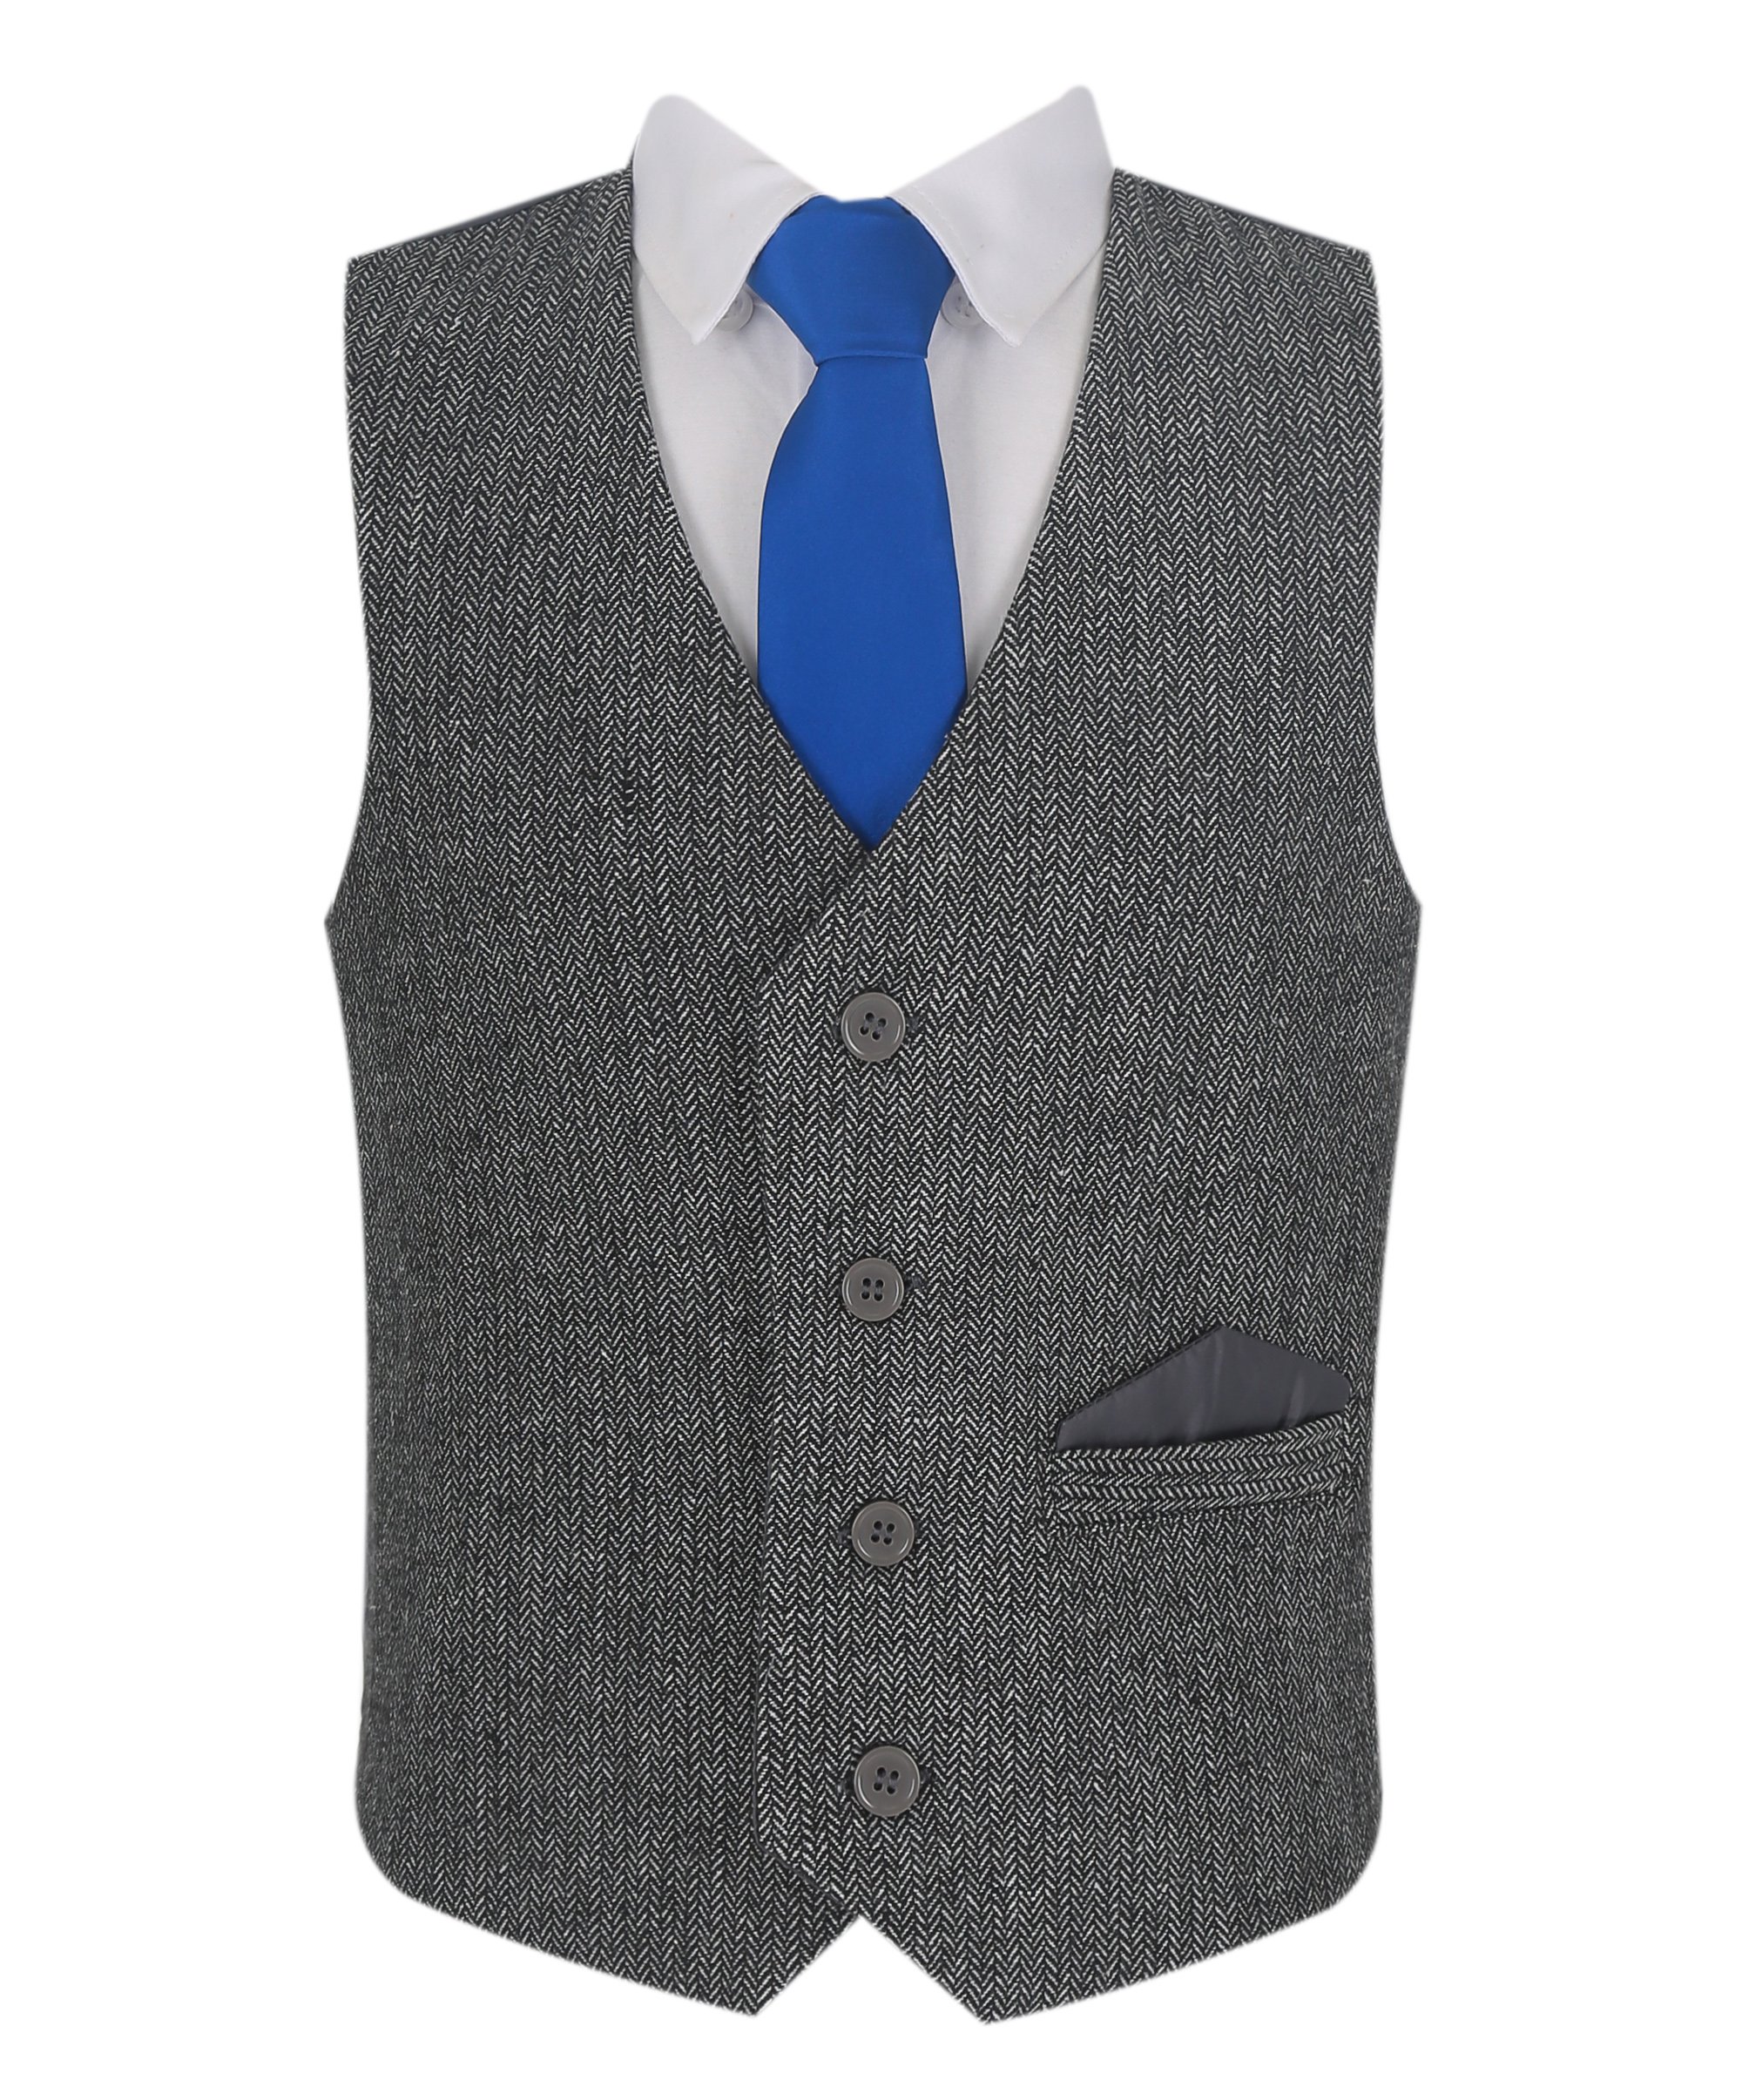 Boys Herringbone Tweed Vest Suit Set - Dark Gray